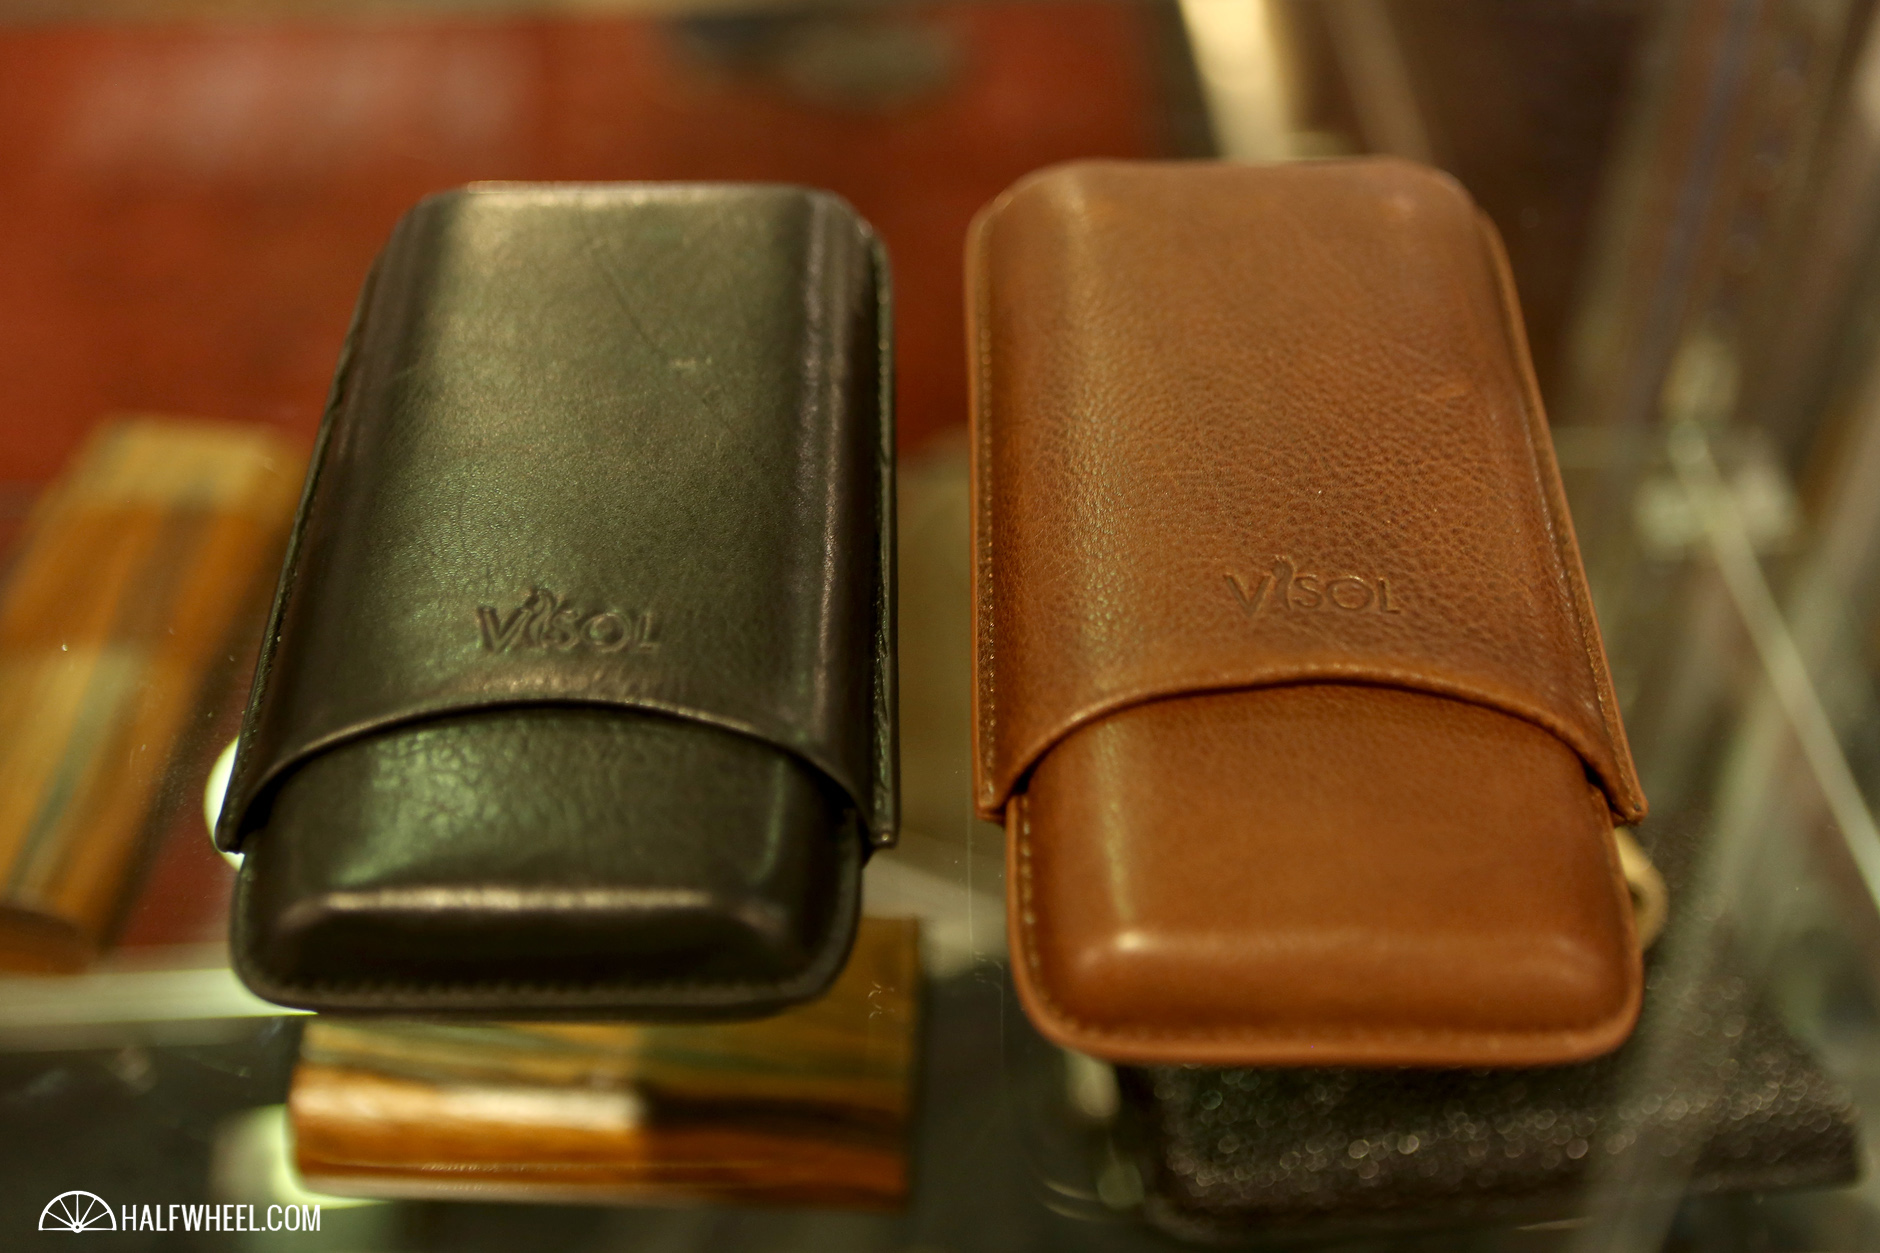 Visol Legend Leather Cigar Cases